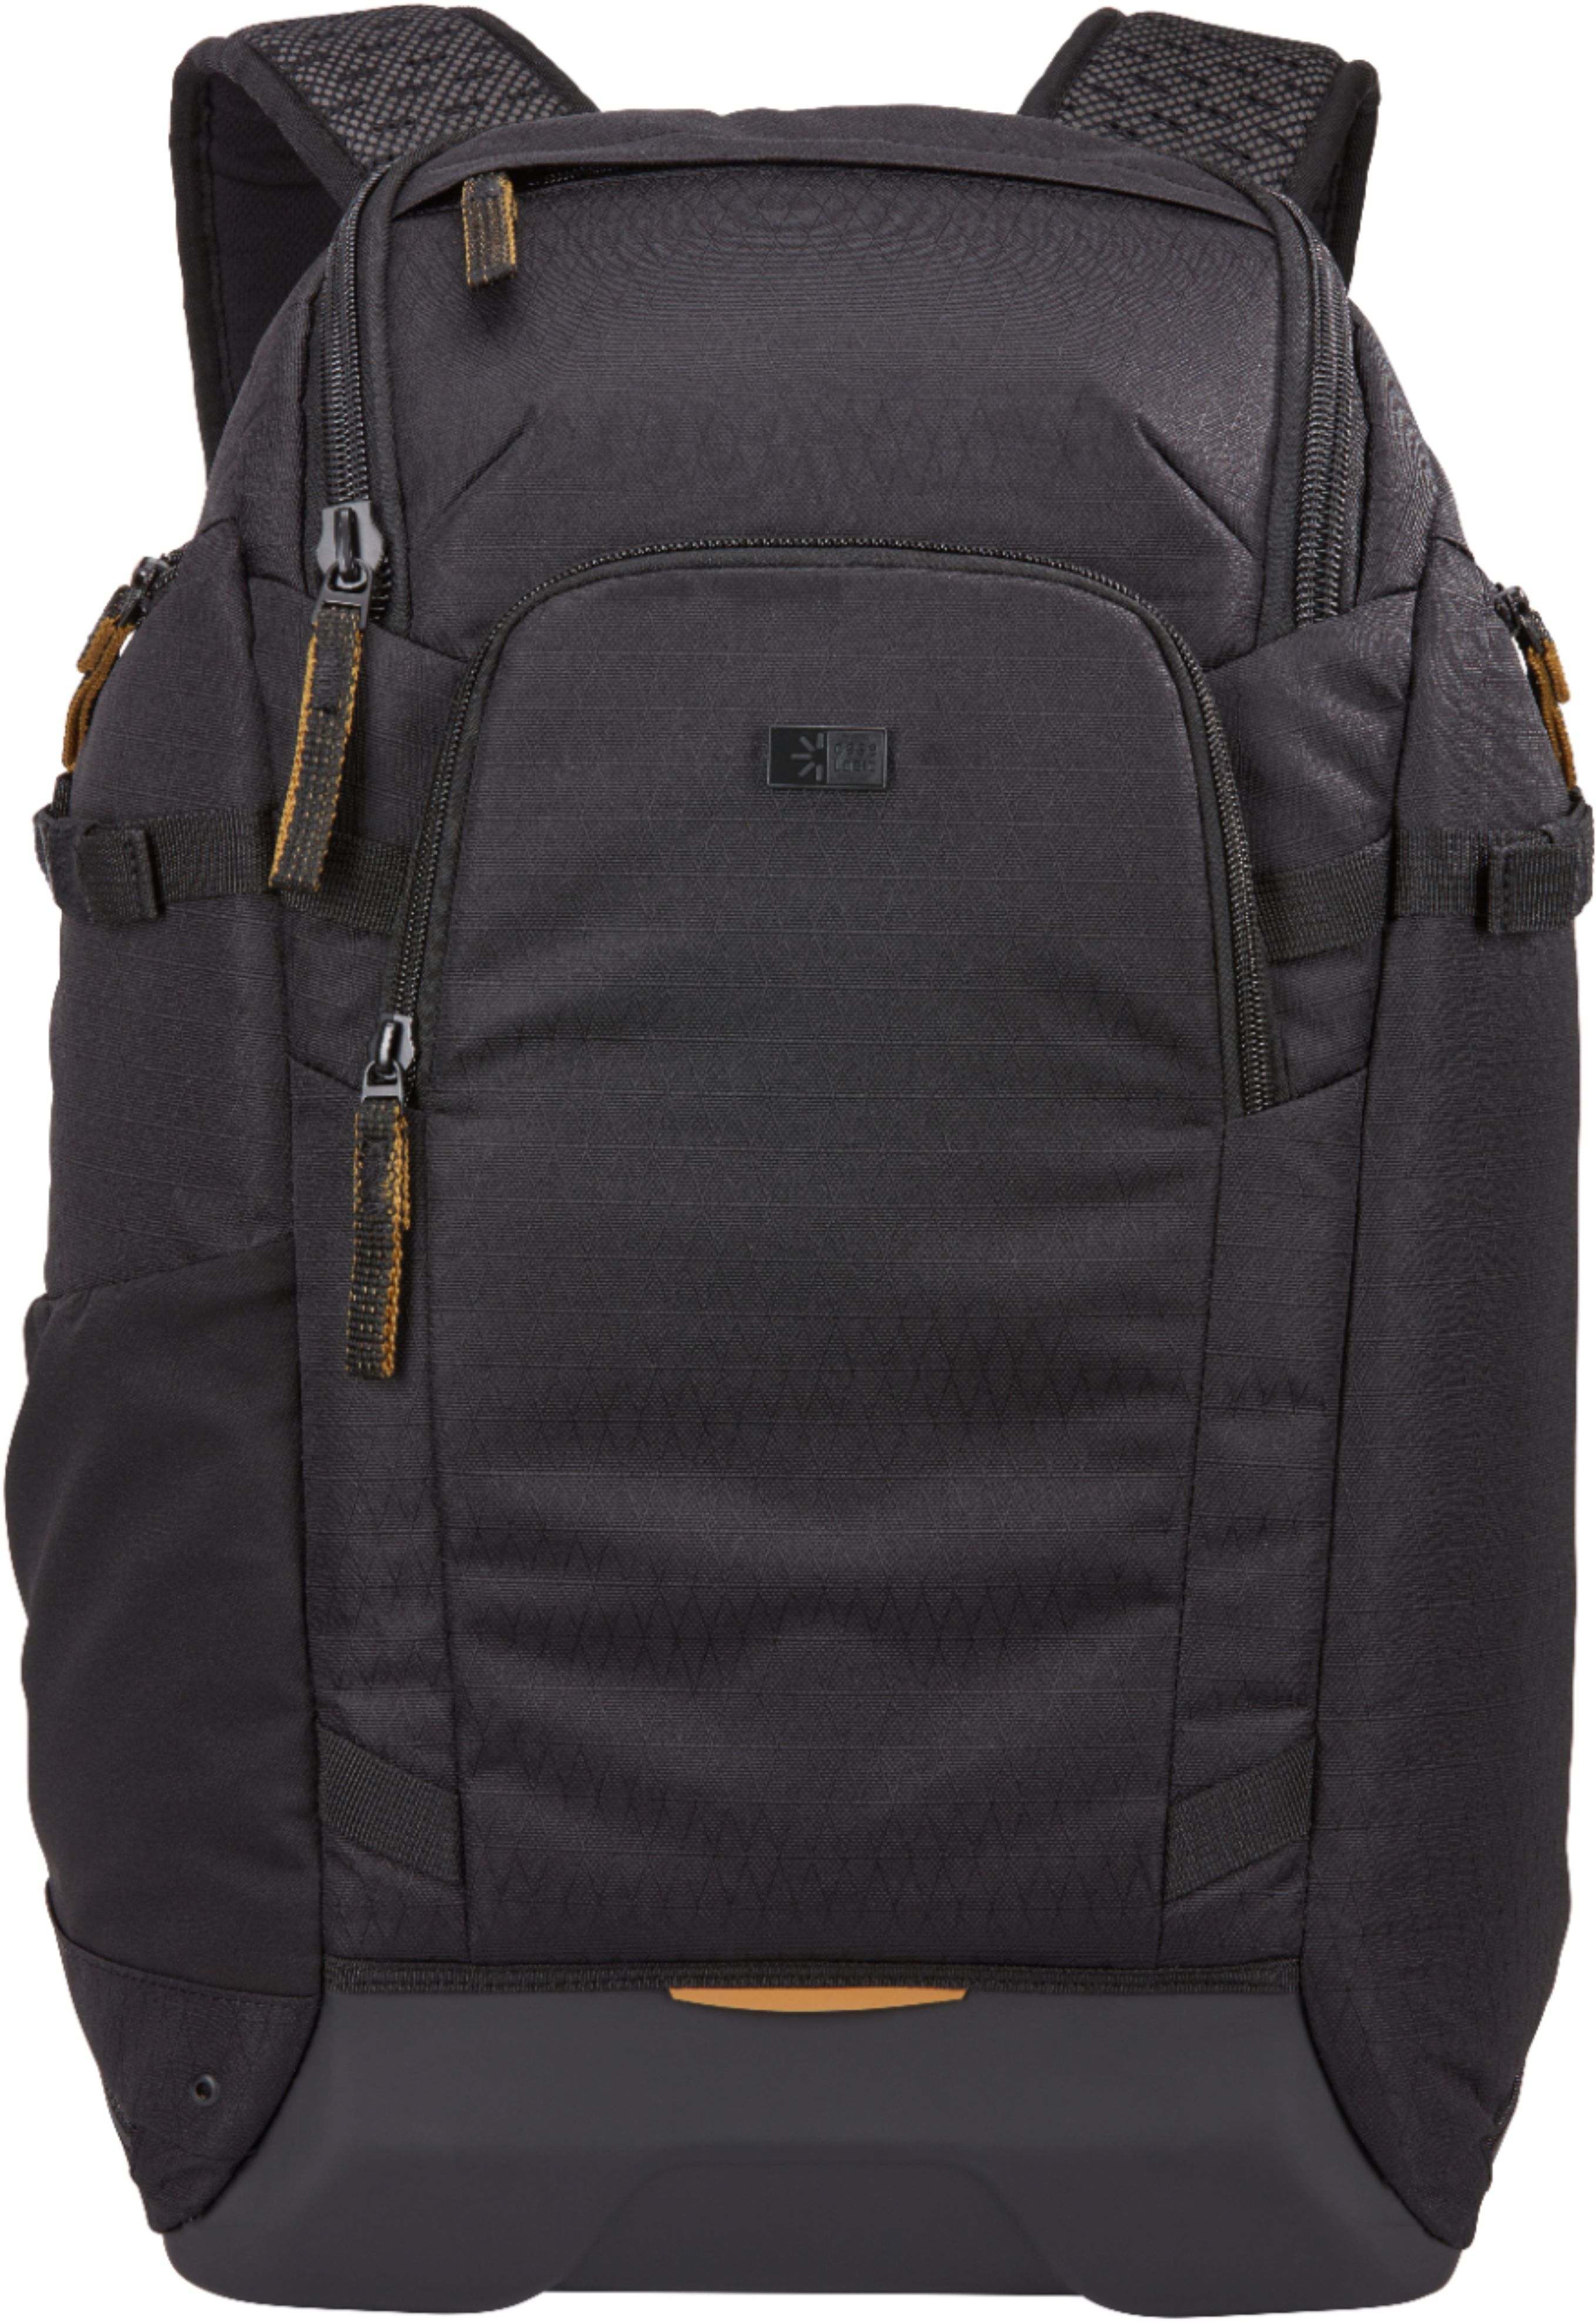 Angle View: Peak Design - Everyday Backpack V2 20L - Black